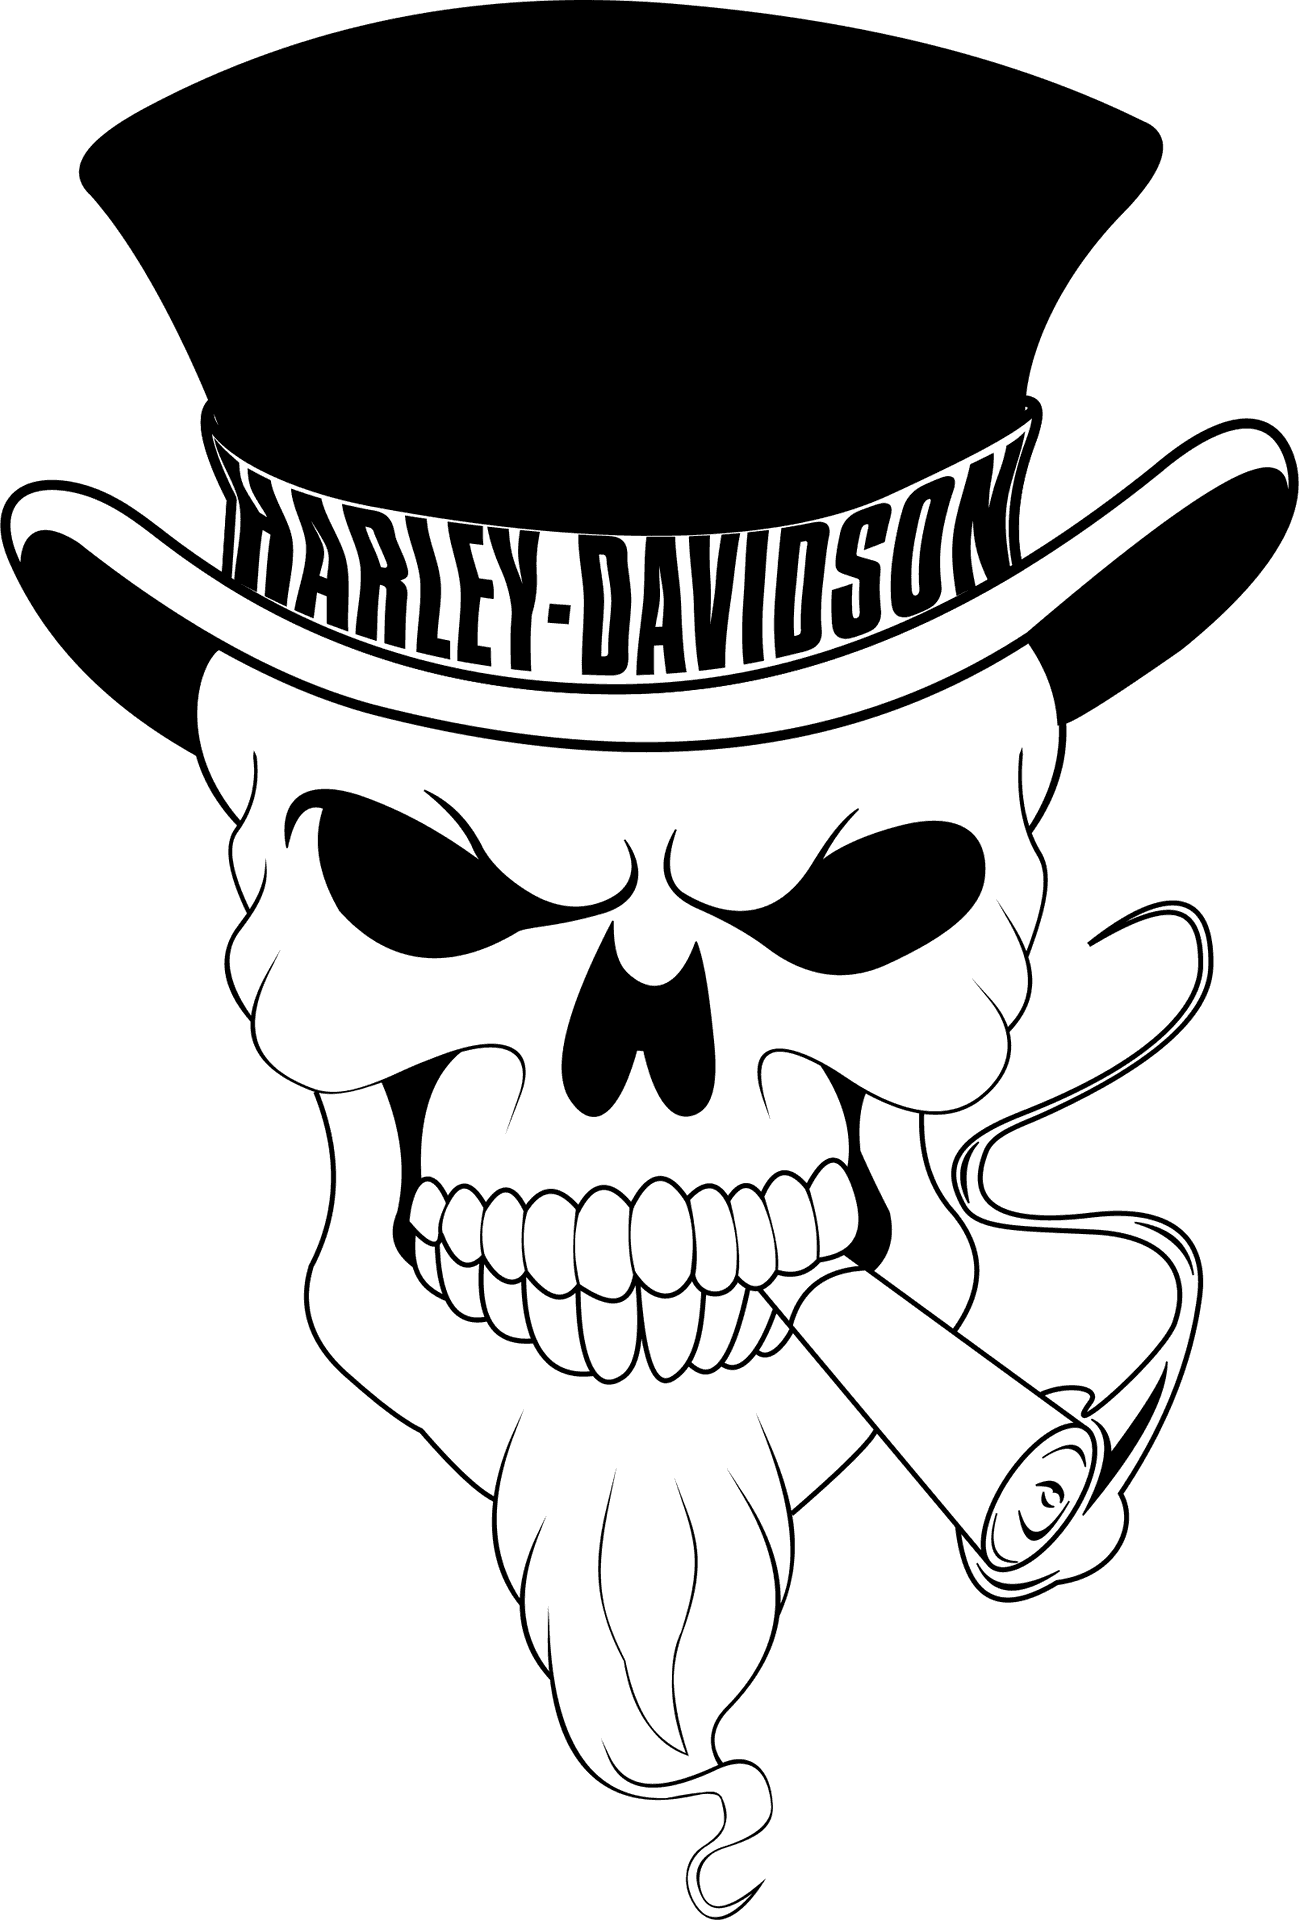 Harley Davidson Skull Logo PNG